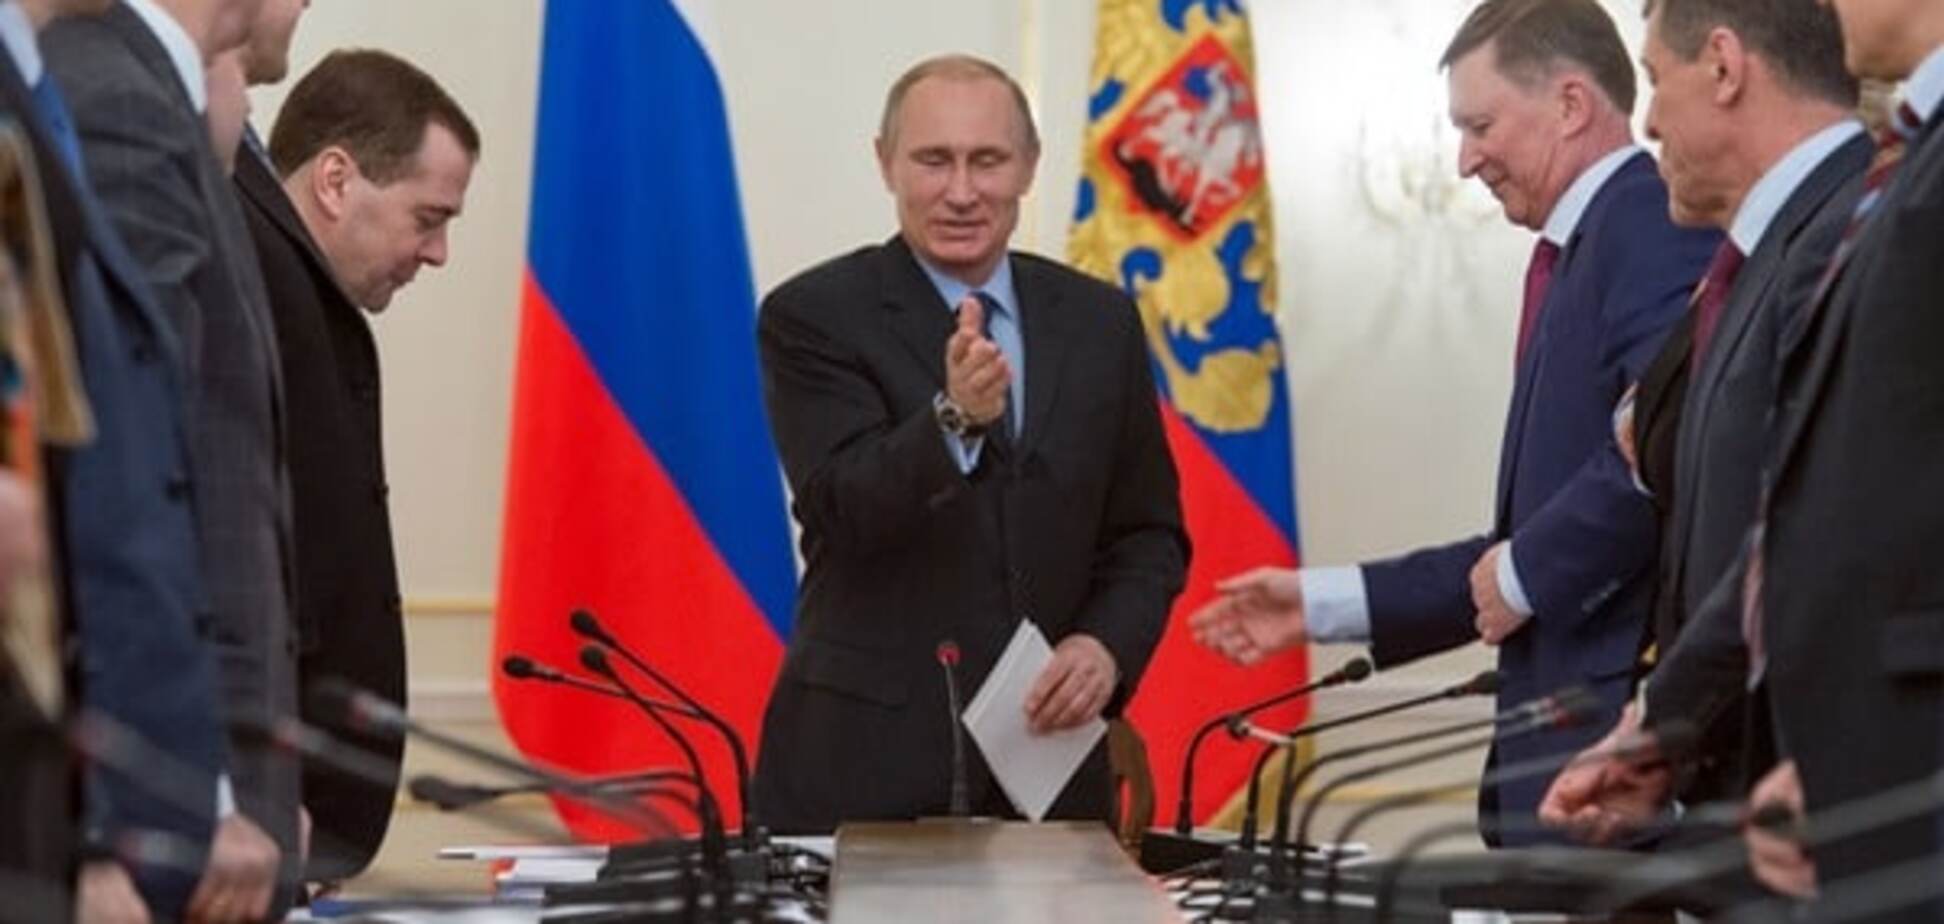 Чекисты, мафия и воры: Портников объяснил, кто на самом деле руководит Россией